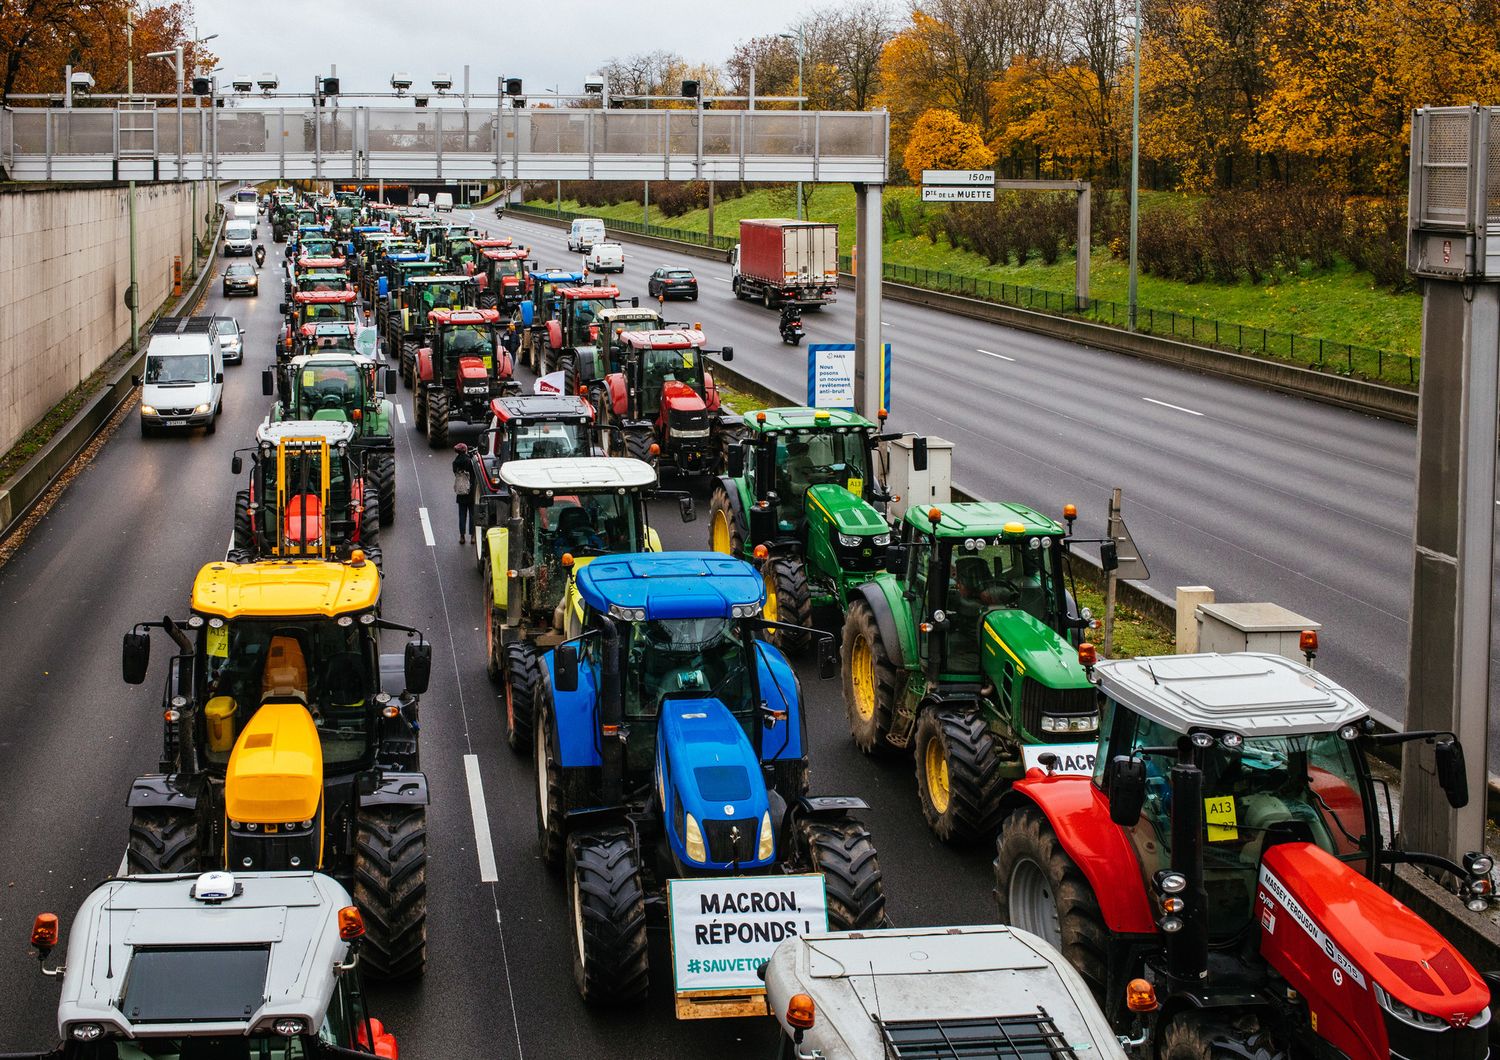 La protesta degli agricoltori in Francia